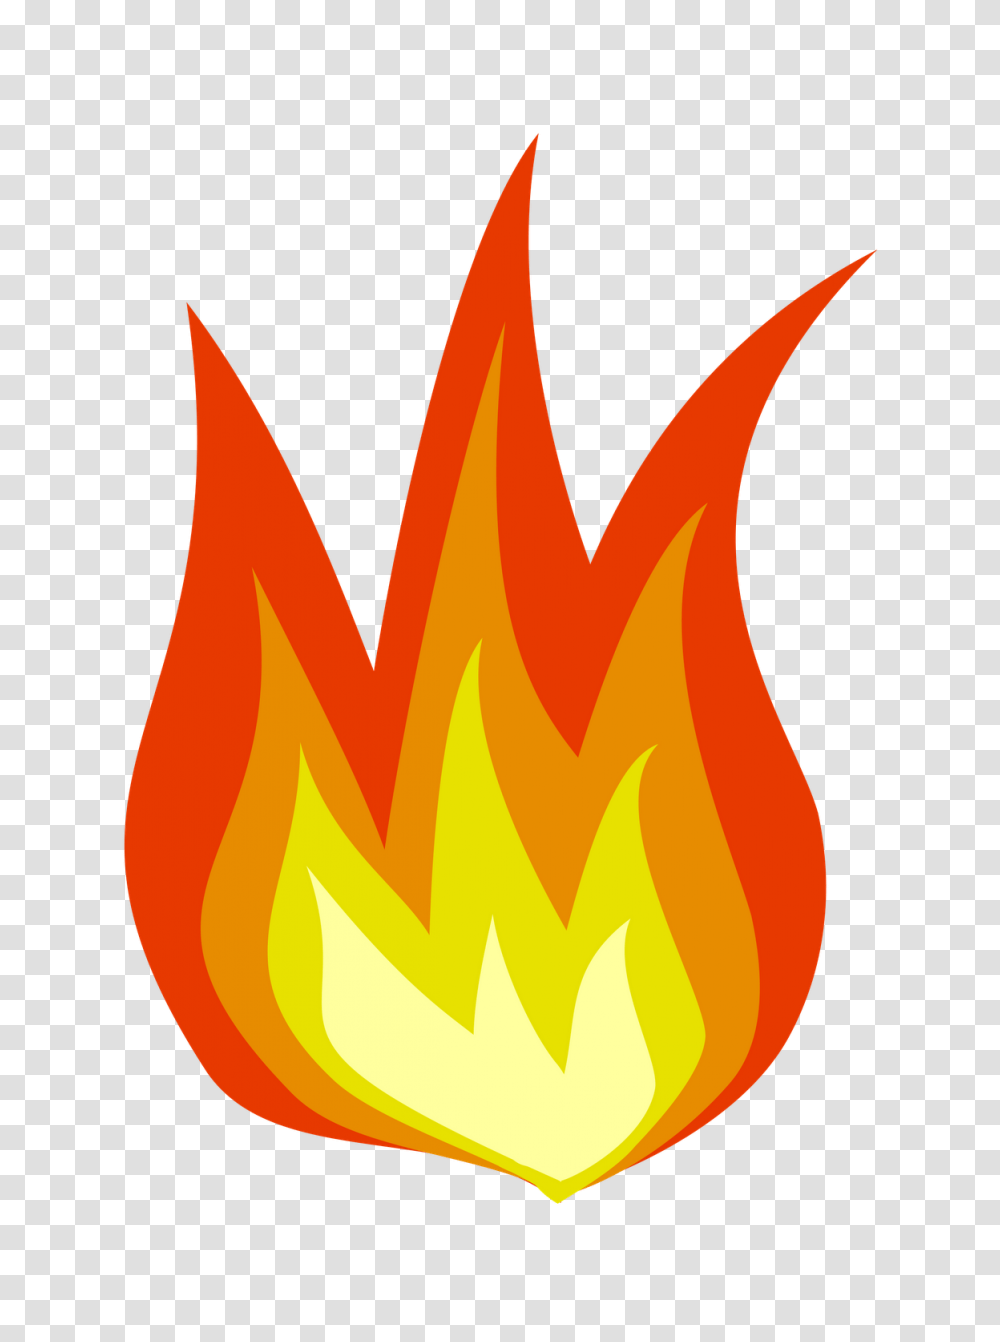 Pentecost Flame Clipart, Fire, Bonfire Transparent Png